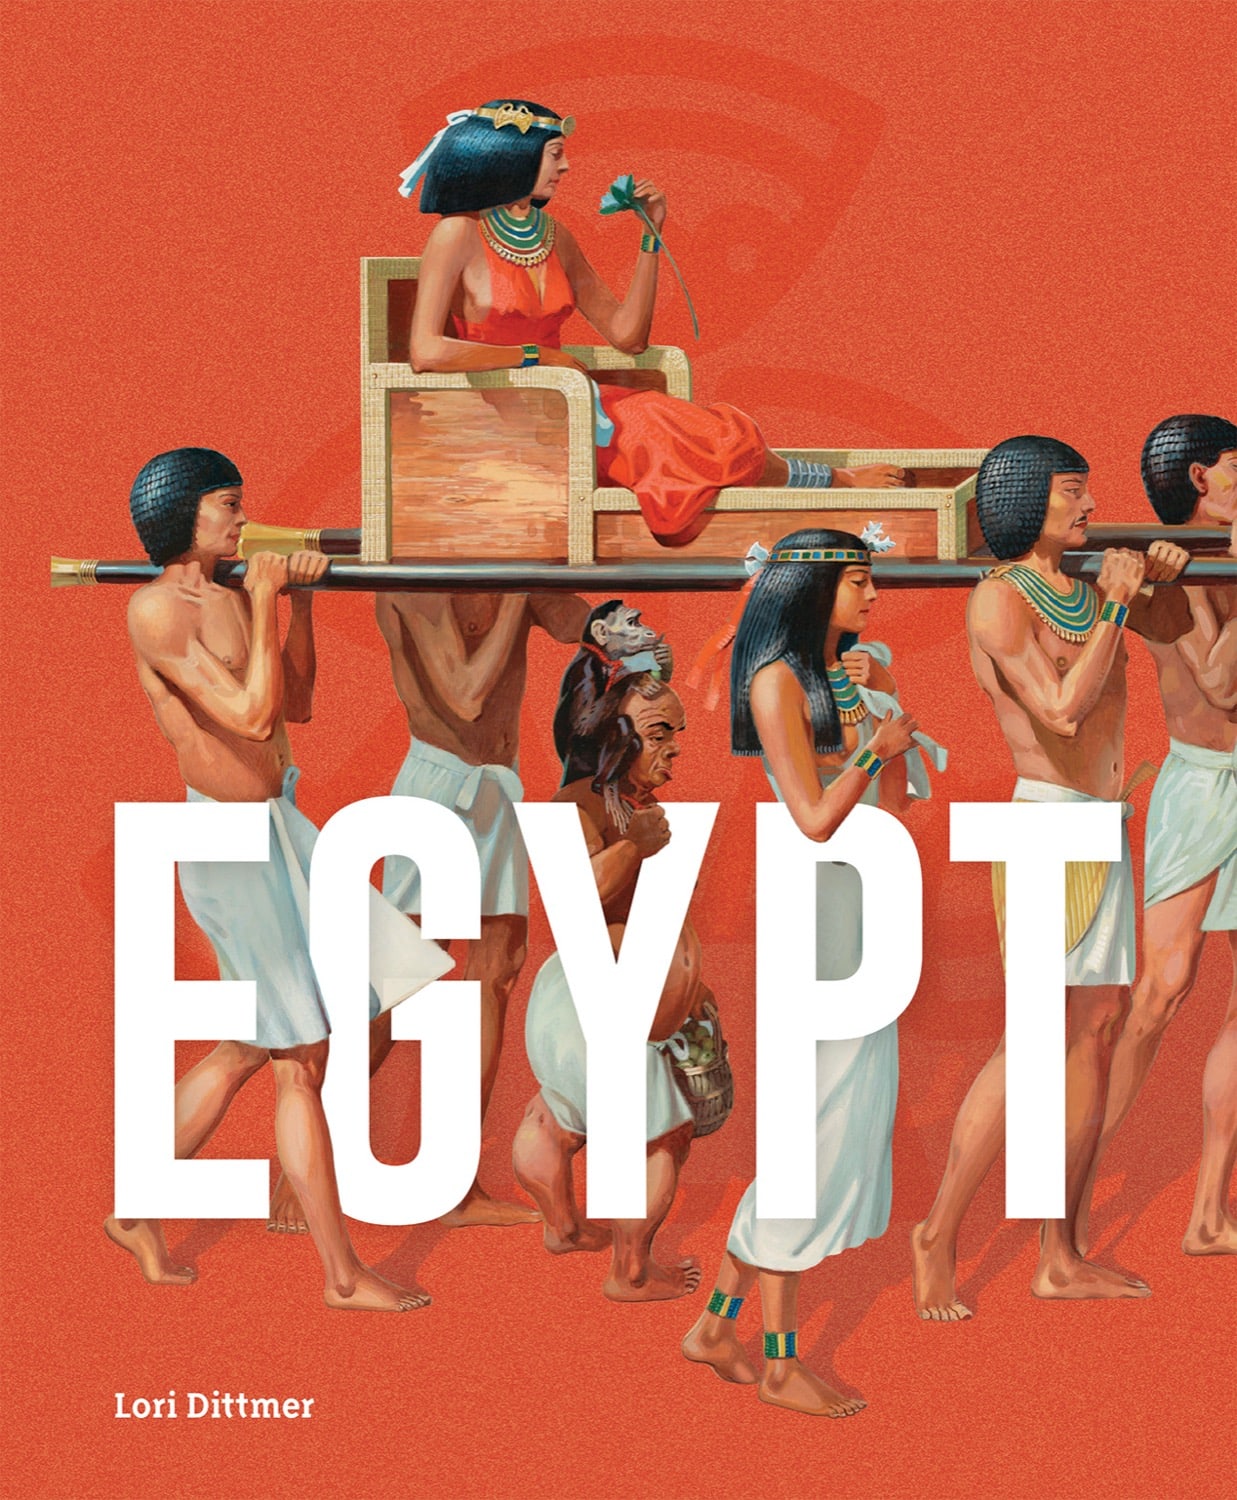 Antike: Ägypten